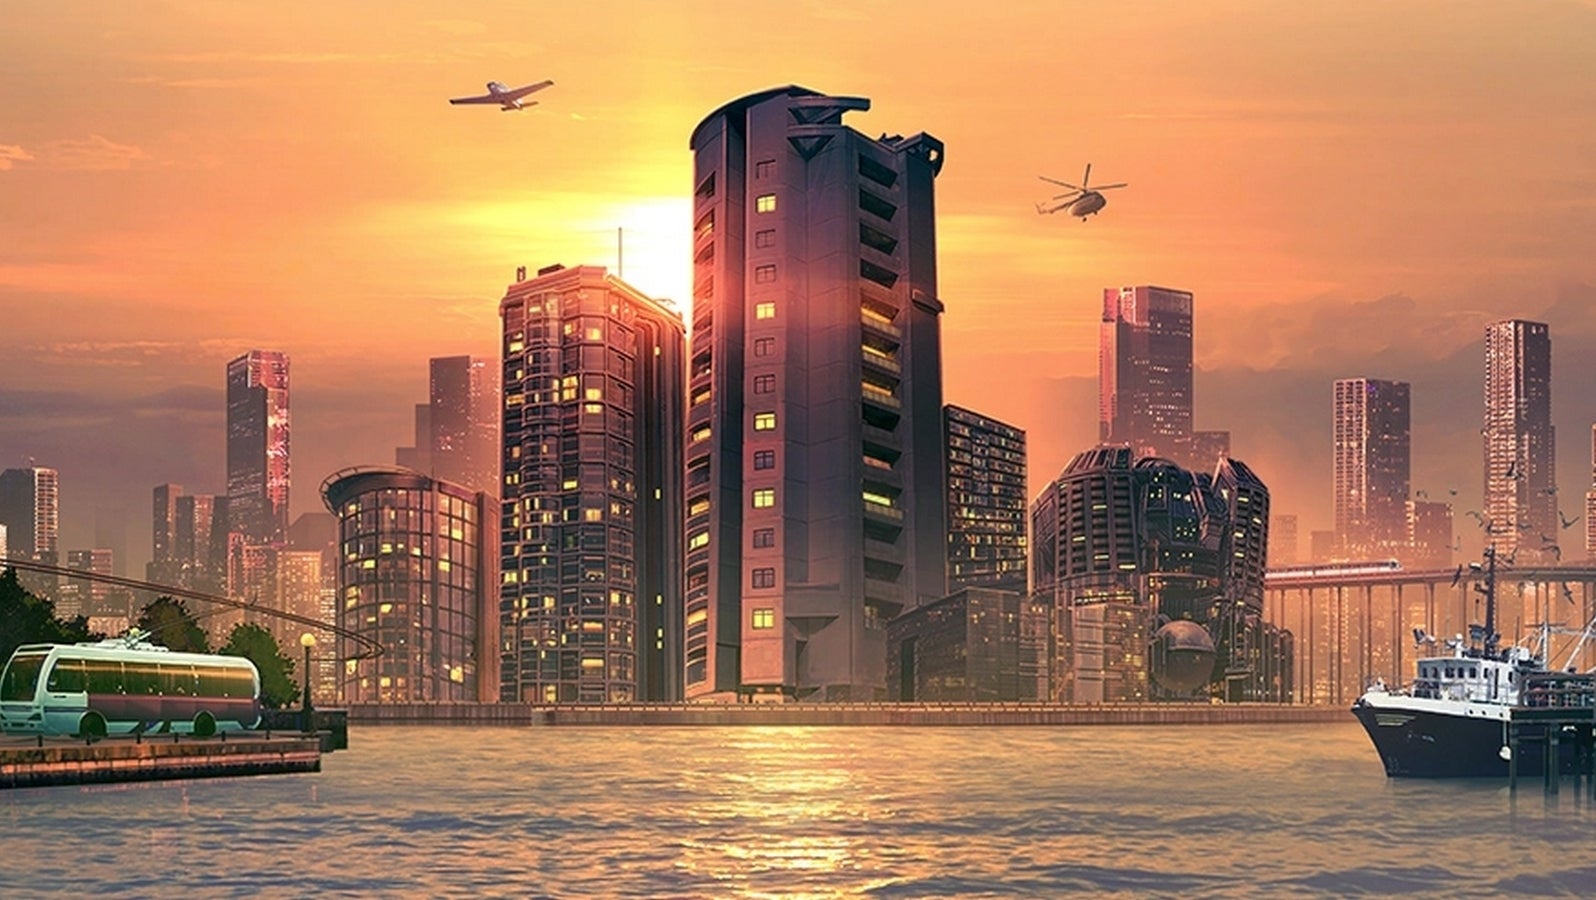 Bilder zu Cities Skylines: Sunset Harbor wird seinem Preis nicht ganz gerecht